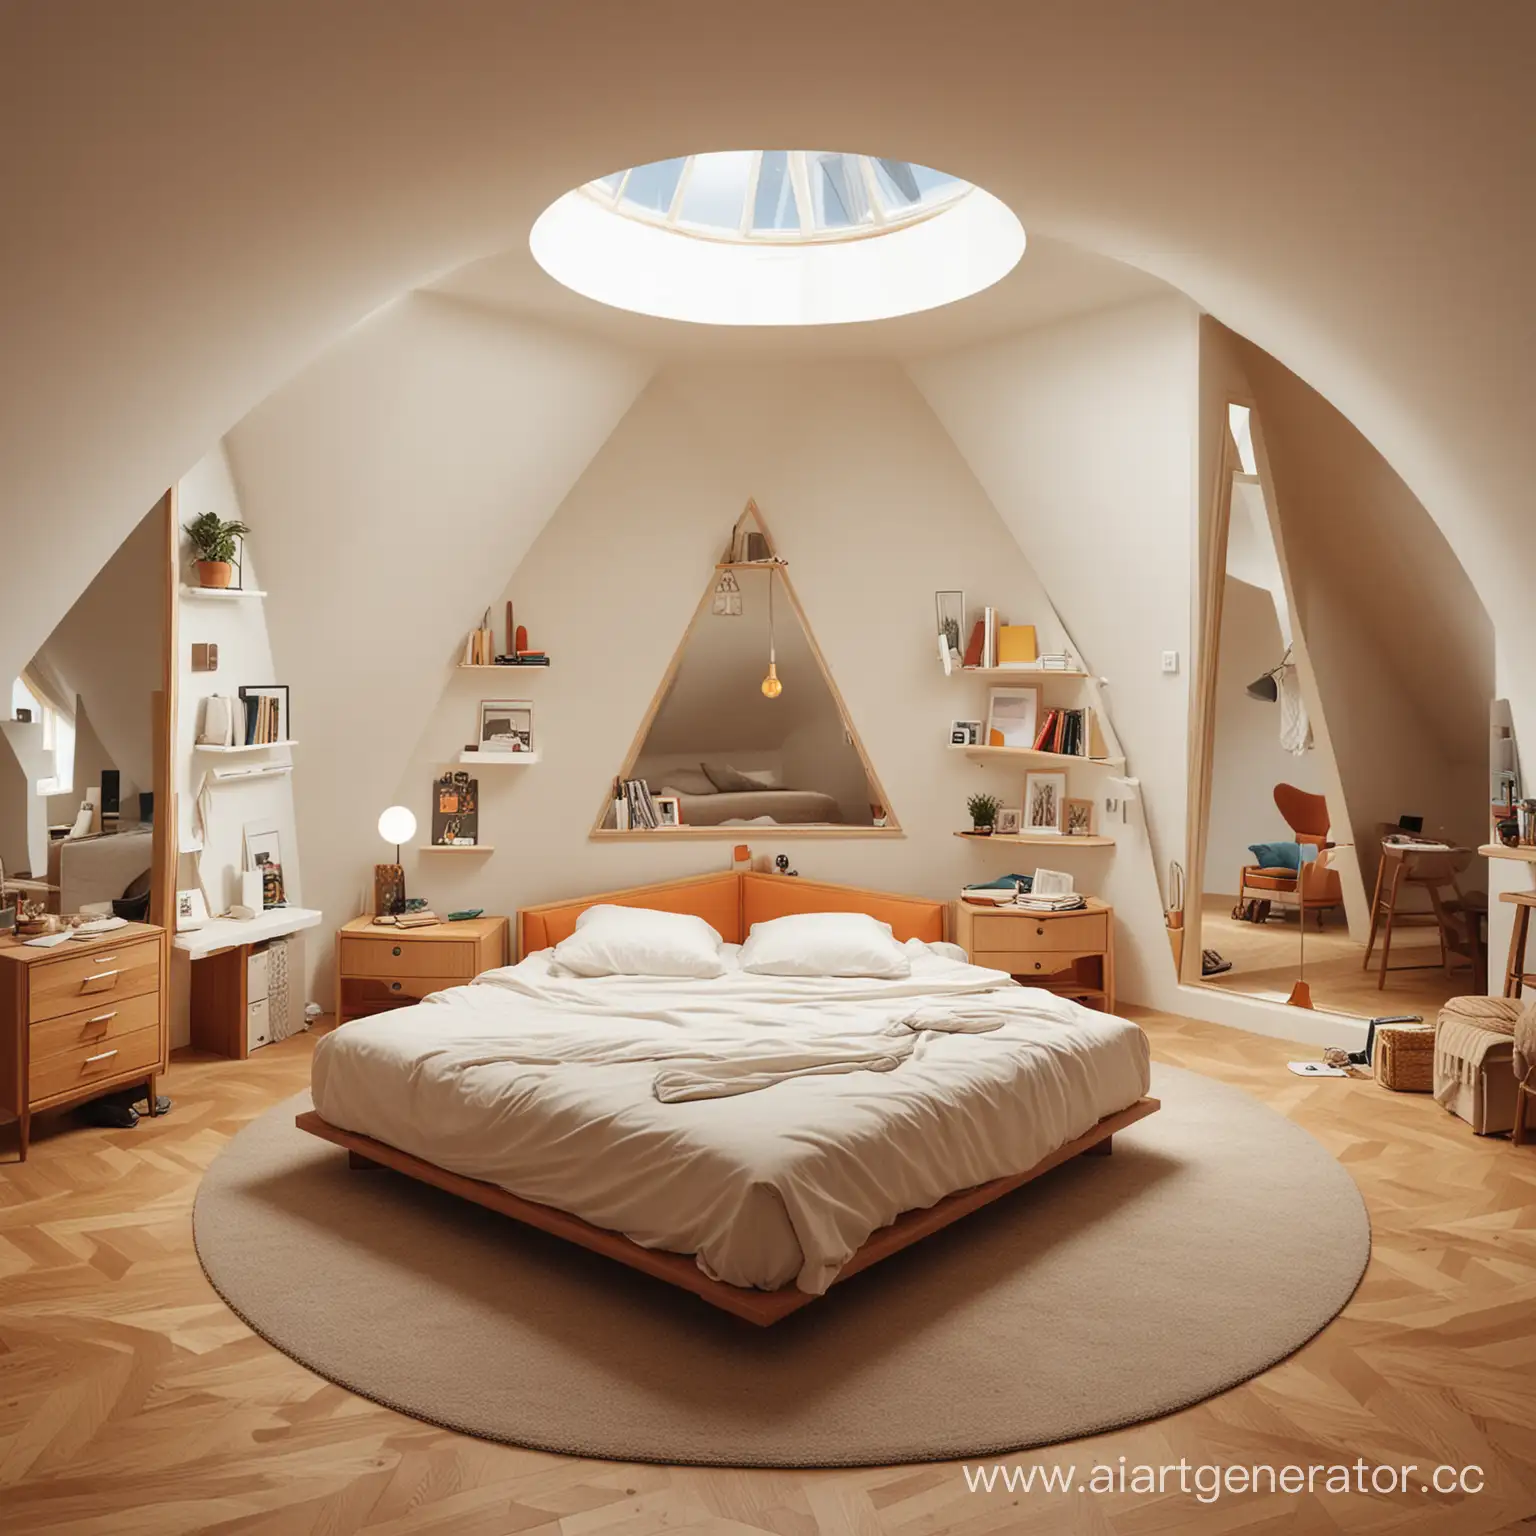 спальня, в которой среди мебели и вещей спрятаны предметы треугольной формы, квадратной формы и круглой формы